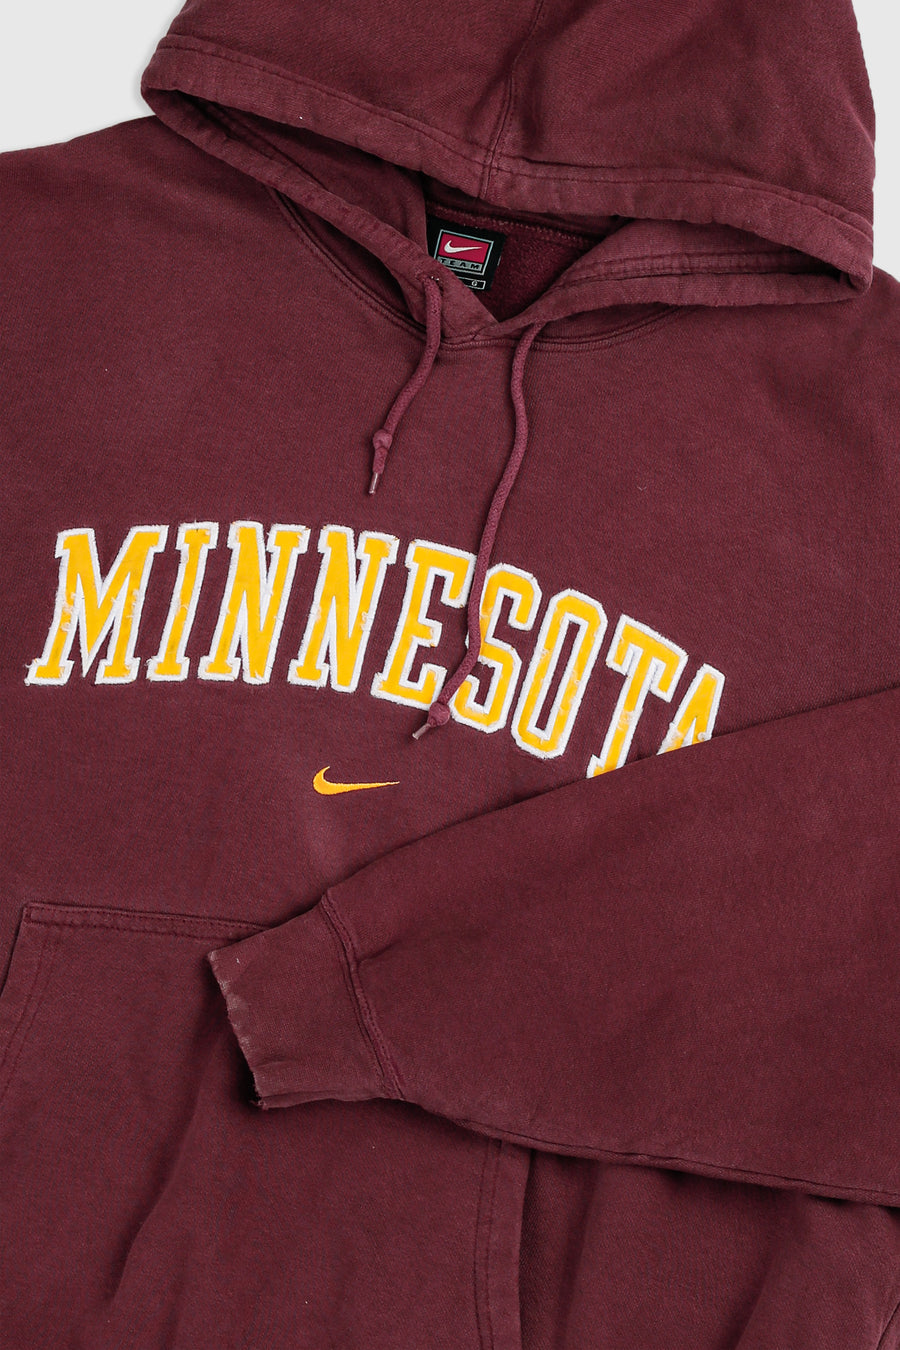 Vintage Nike Minnesota Sweatshirt - L